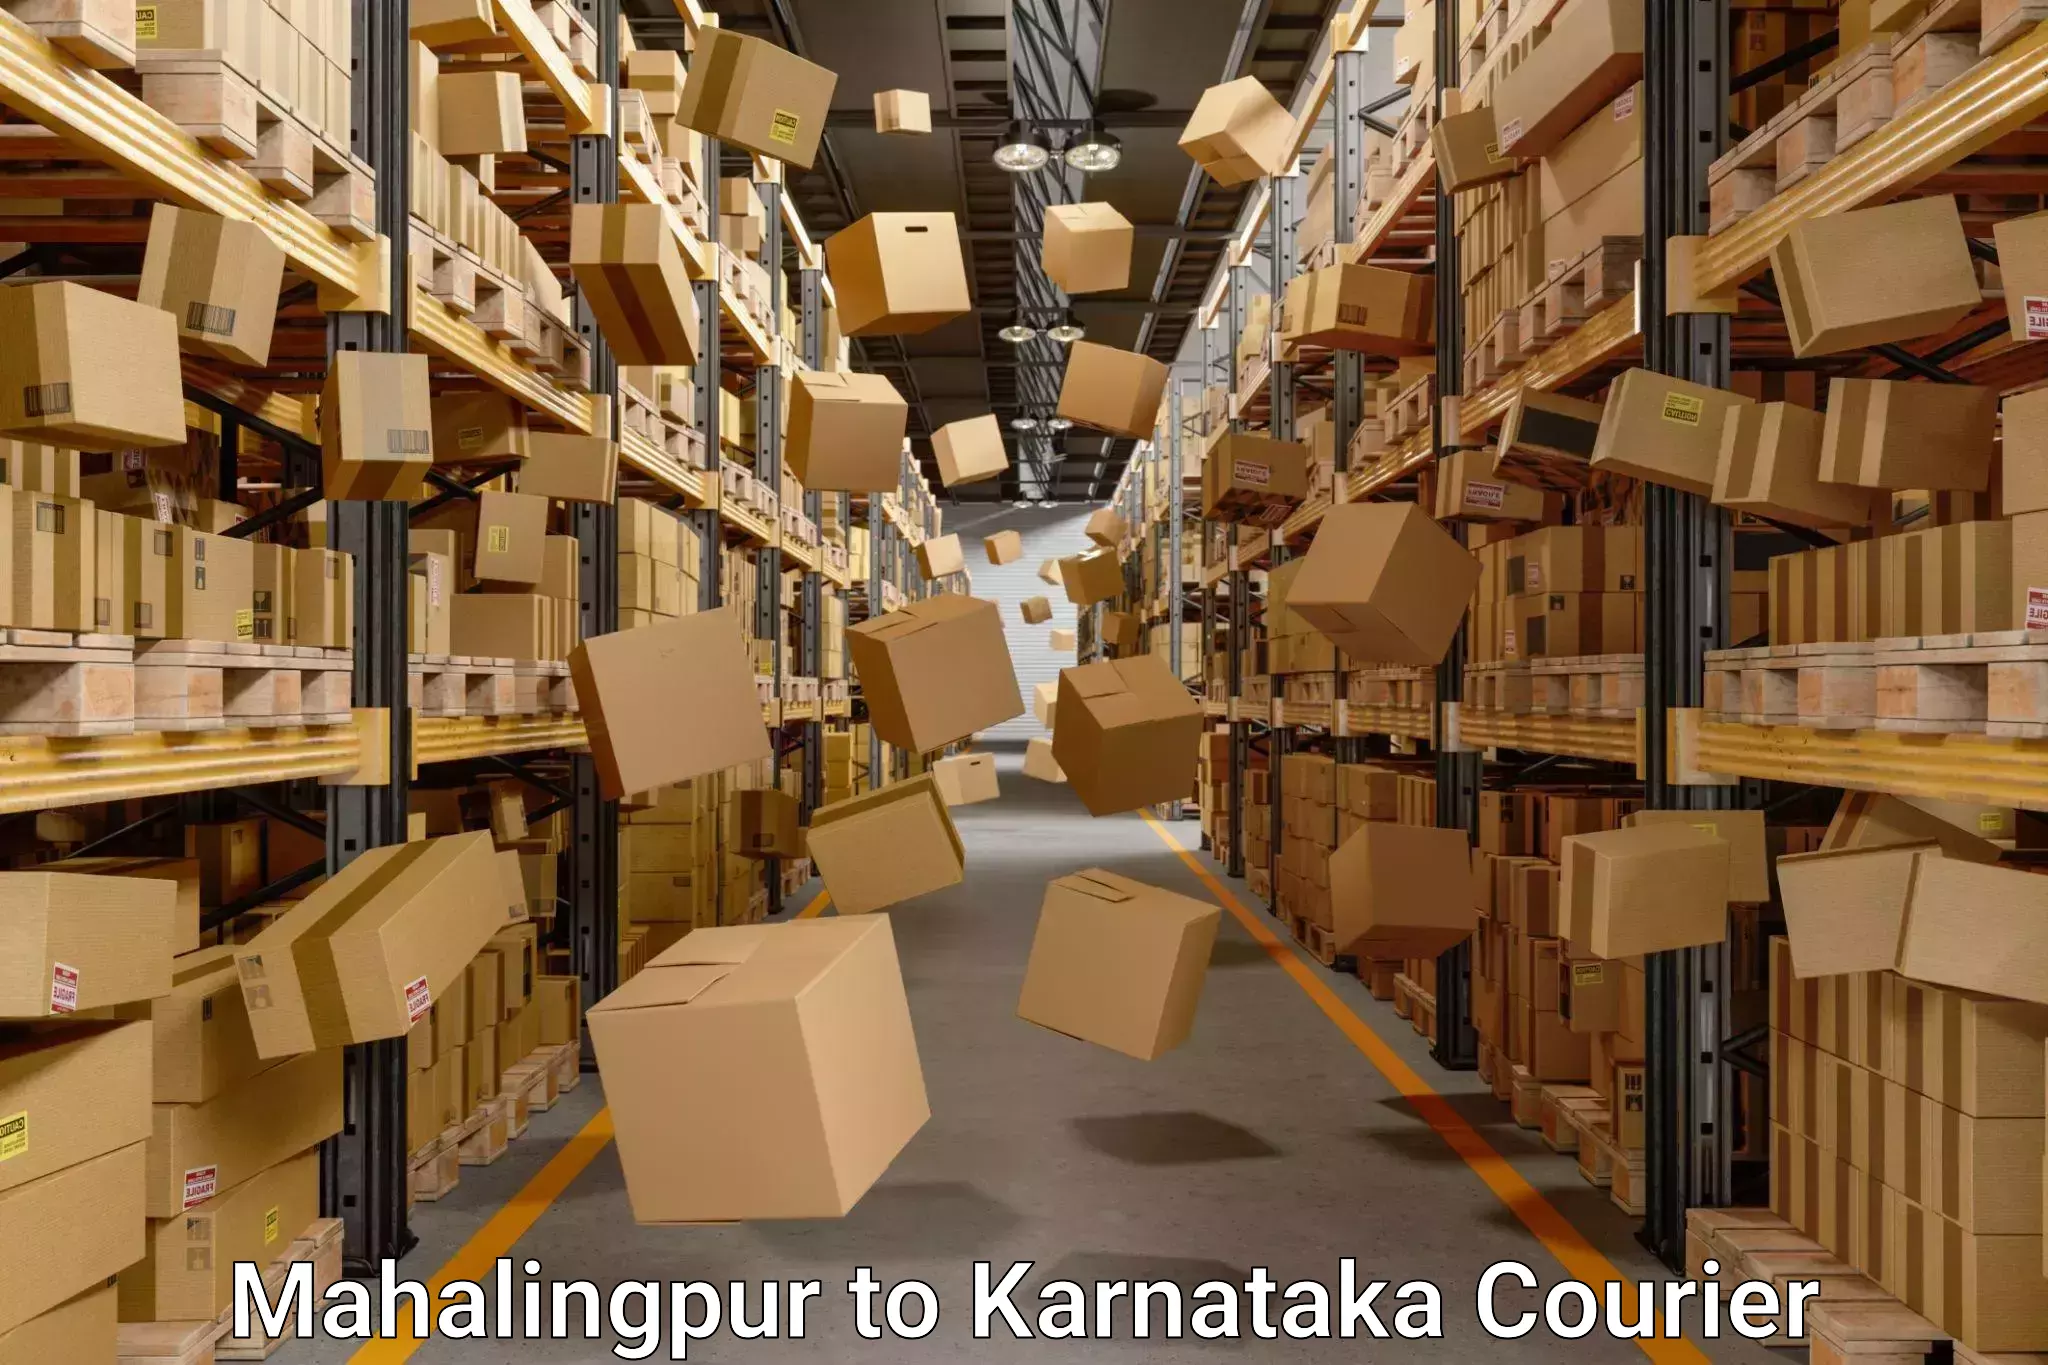 Packing and moving services Mahalingpur to Karnataka